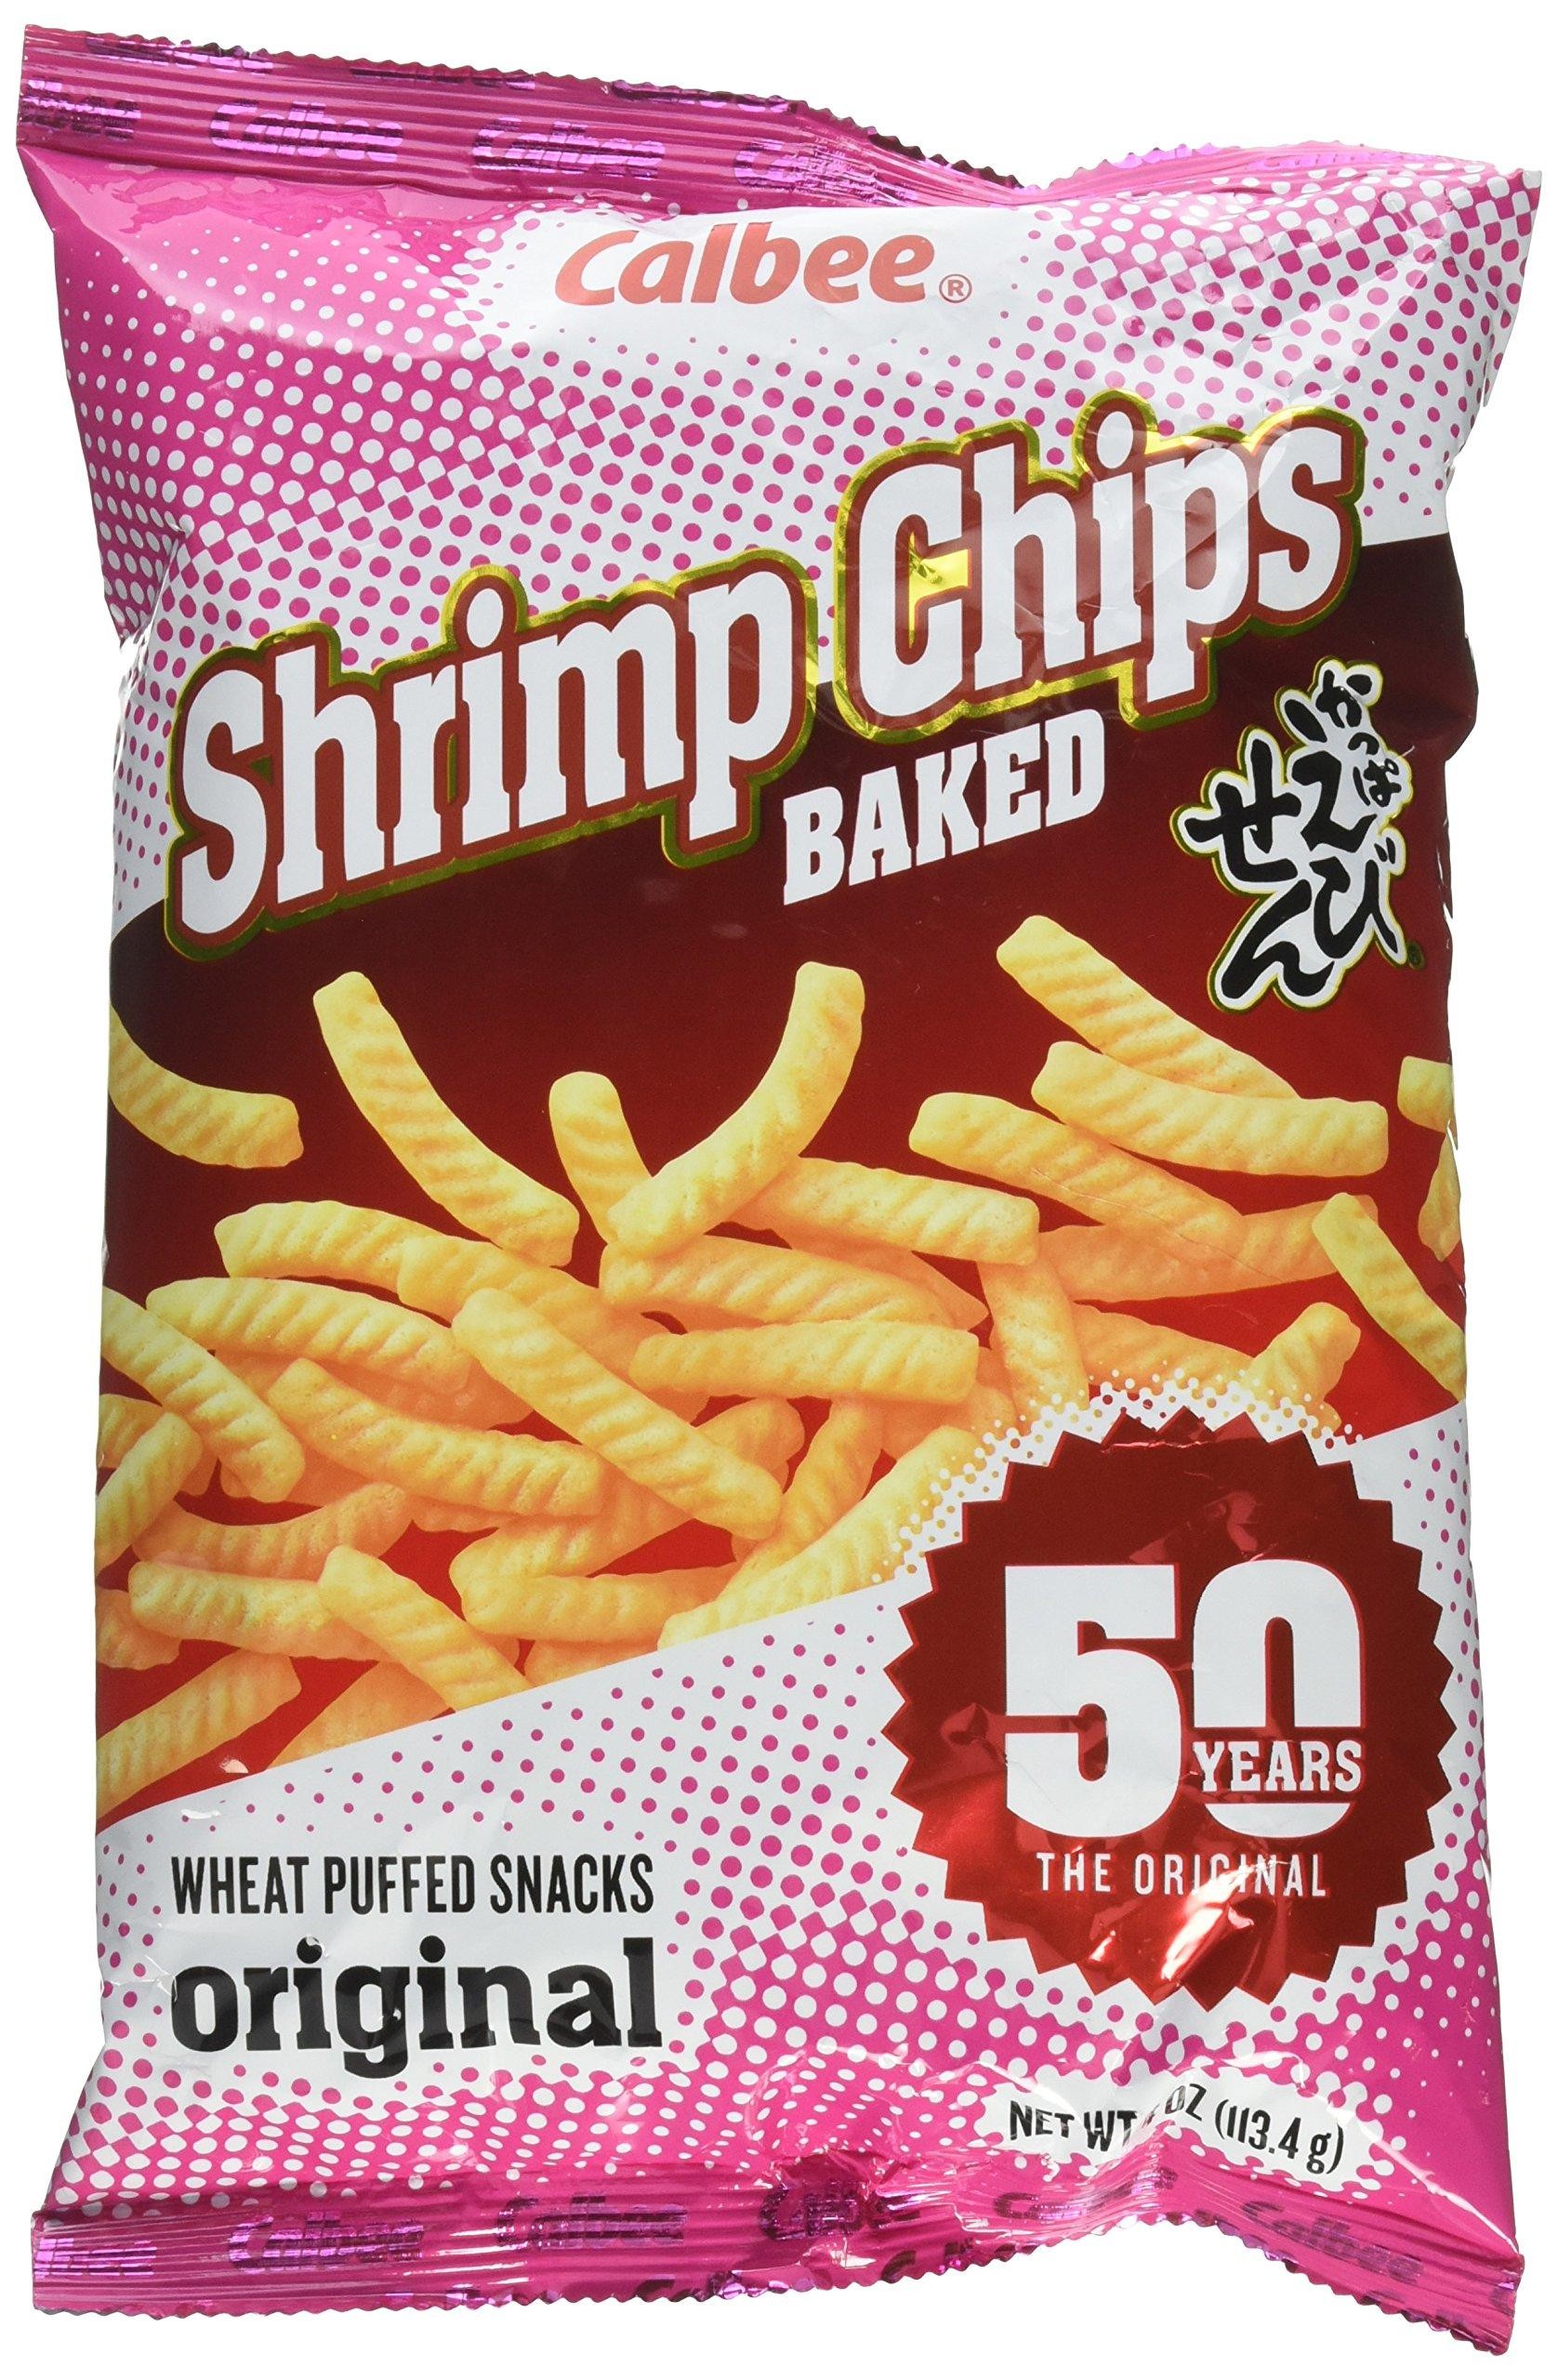 Shrimp chips